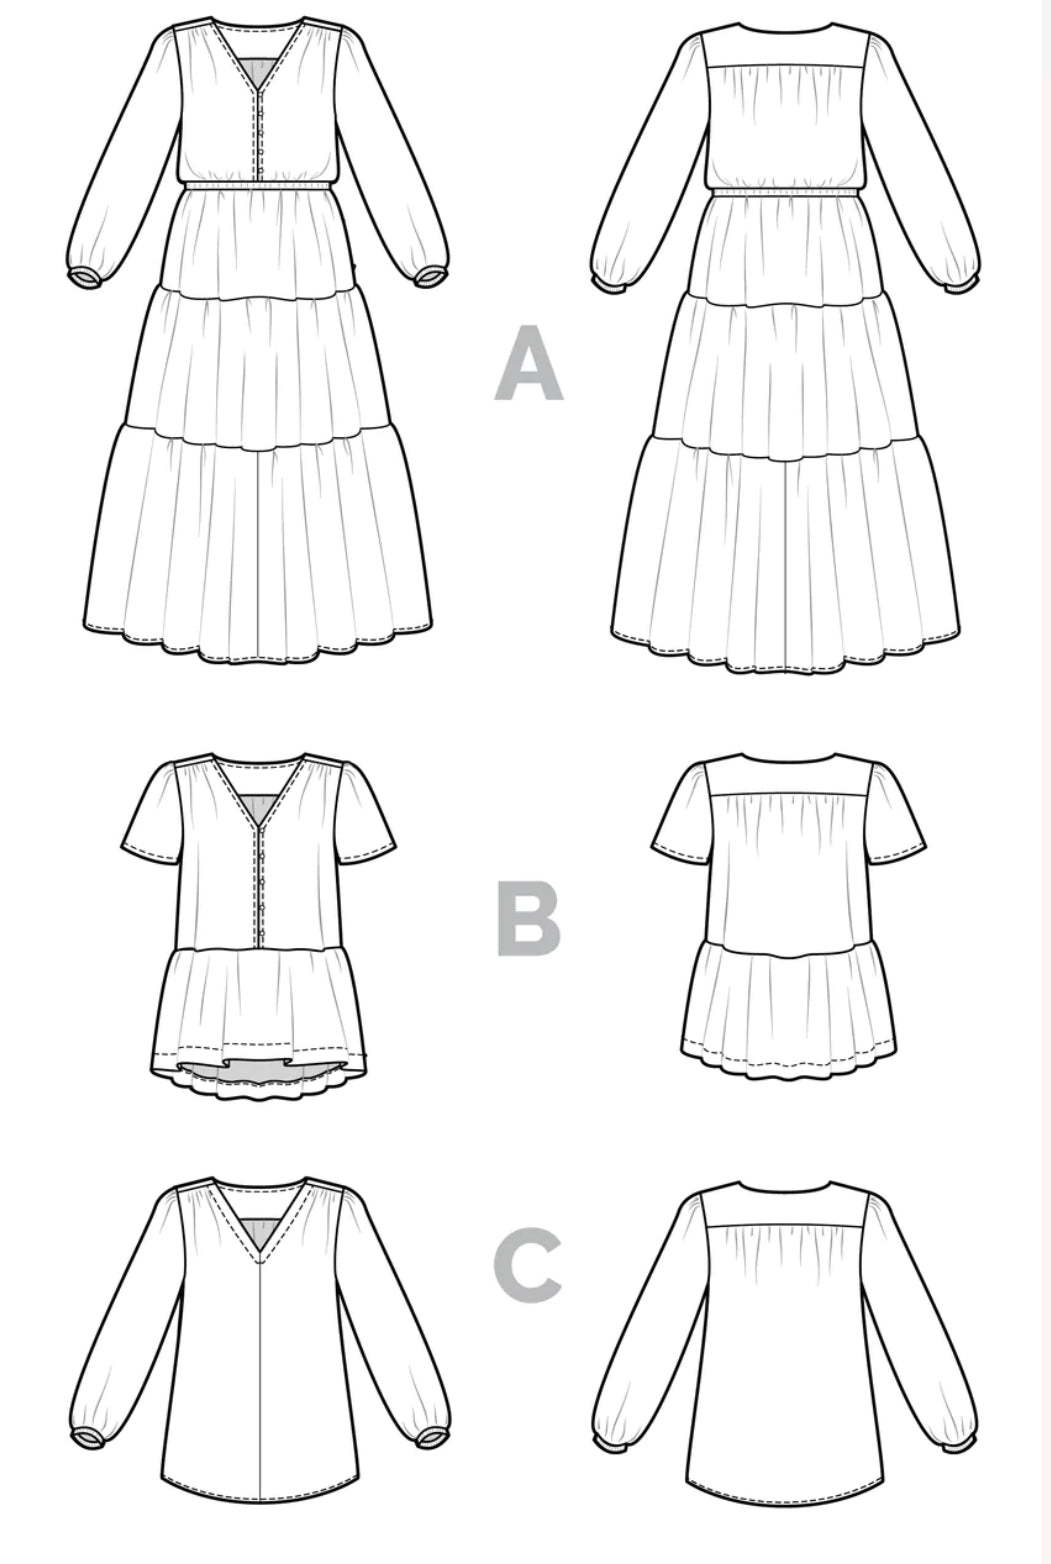 Closet Core - Nicks Dress & Blouse Sewing Pattern